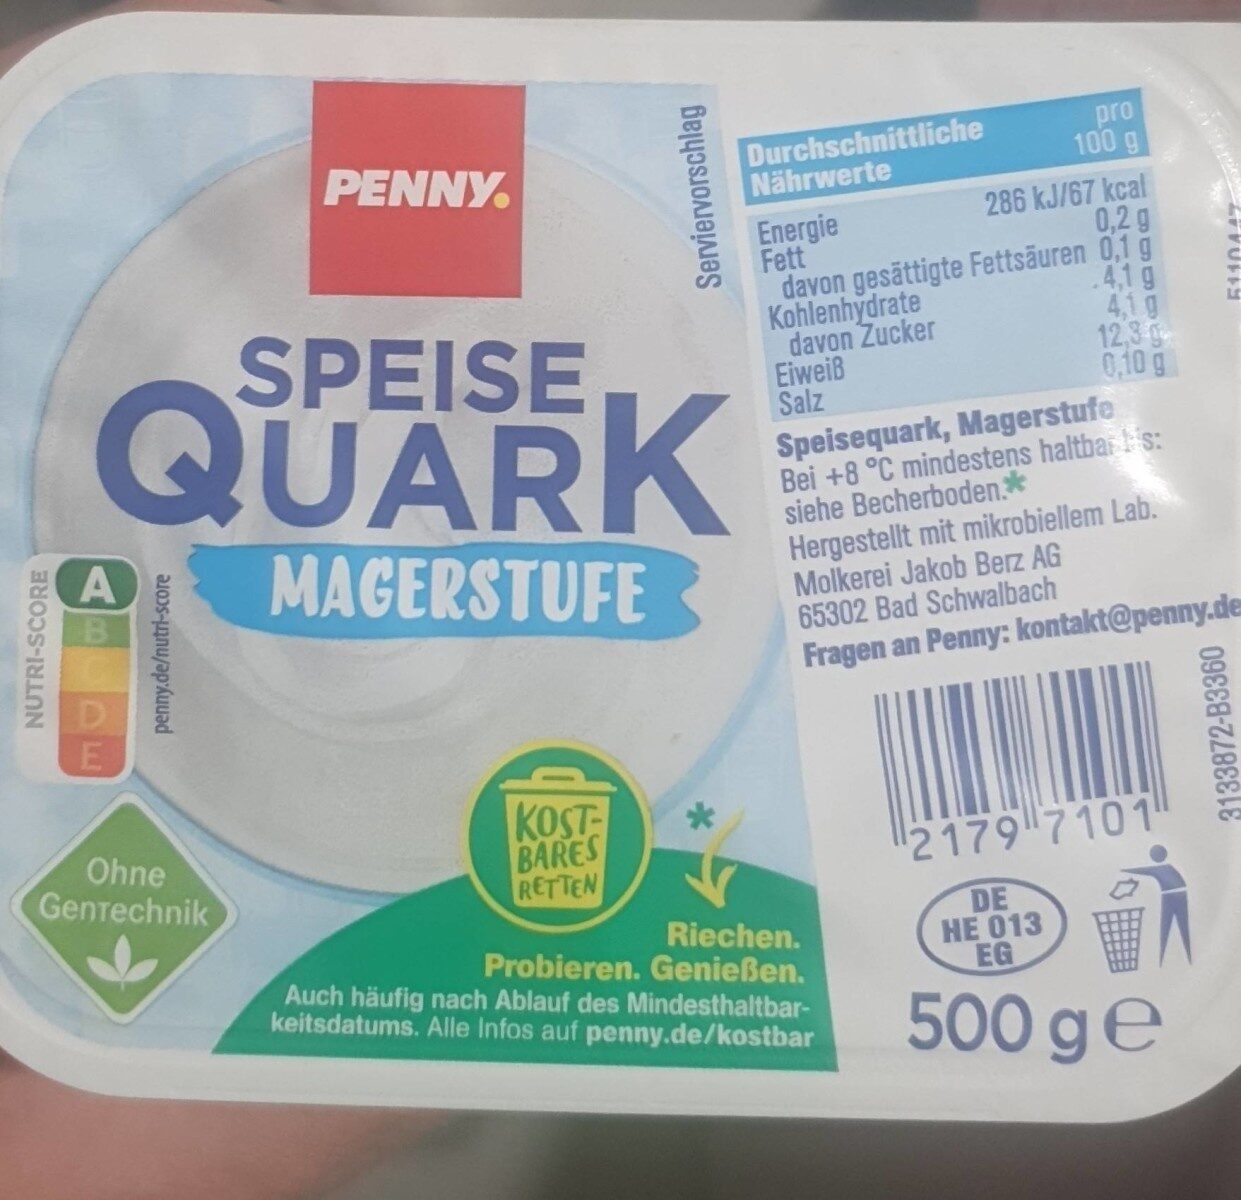 Speise Quark - Product - de